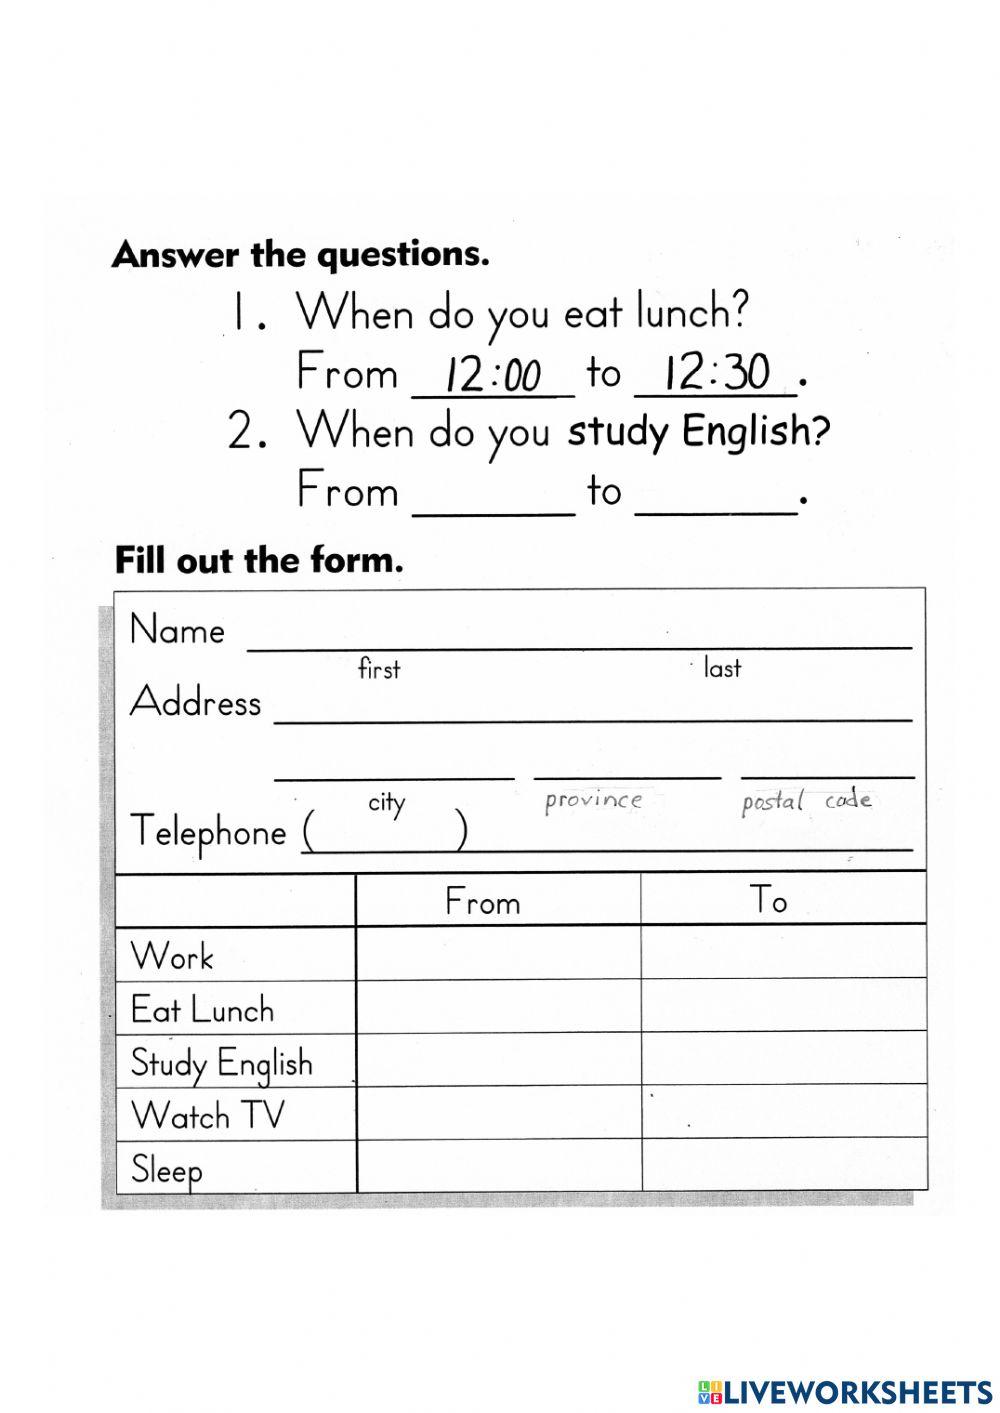 Job: Fill out a form (CLB 1)